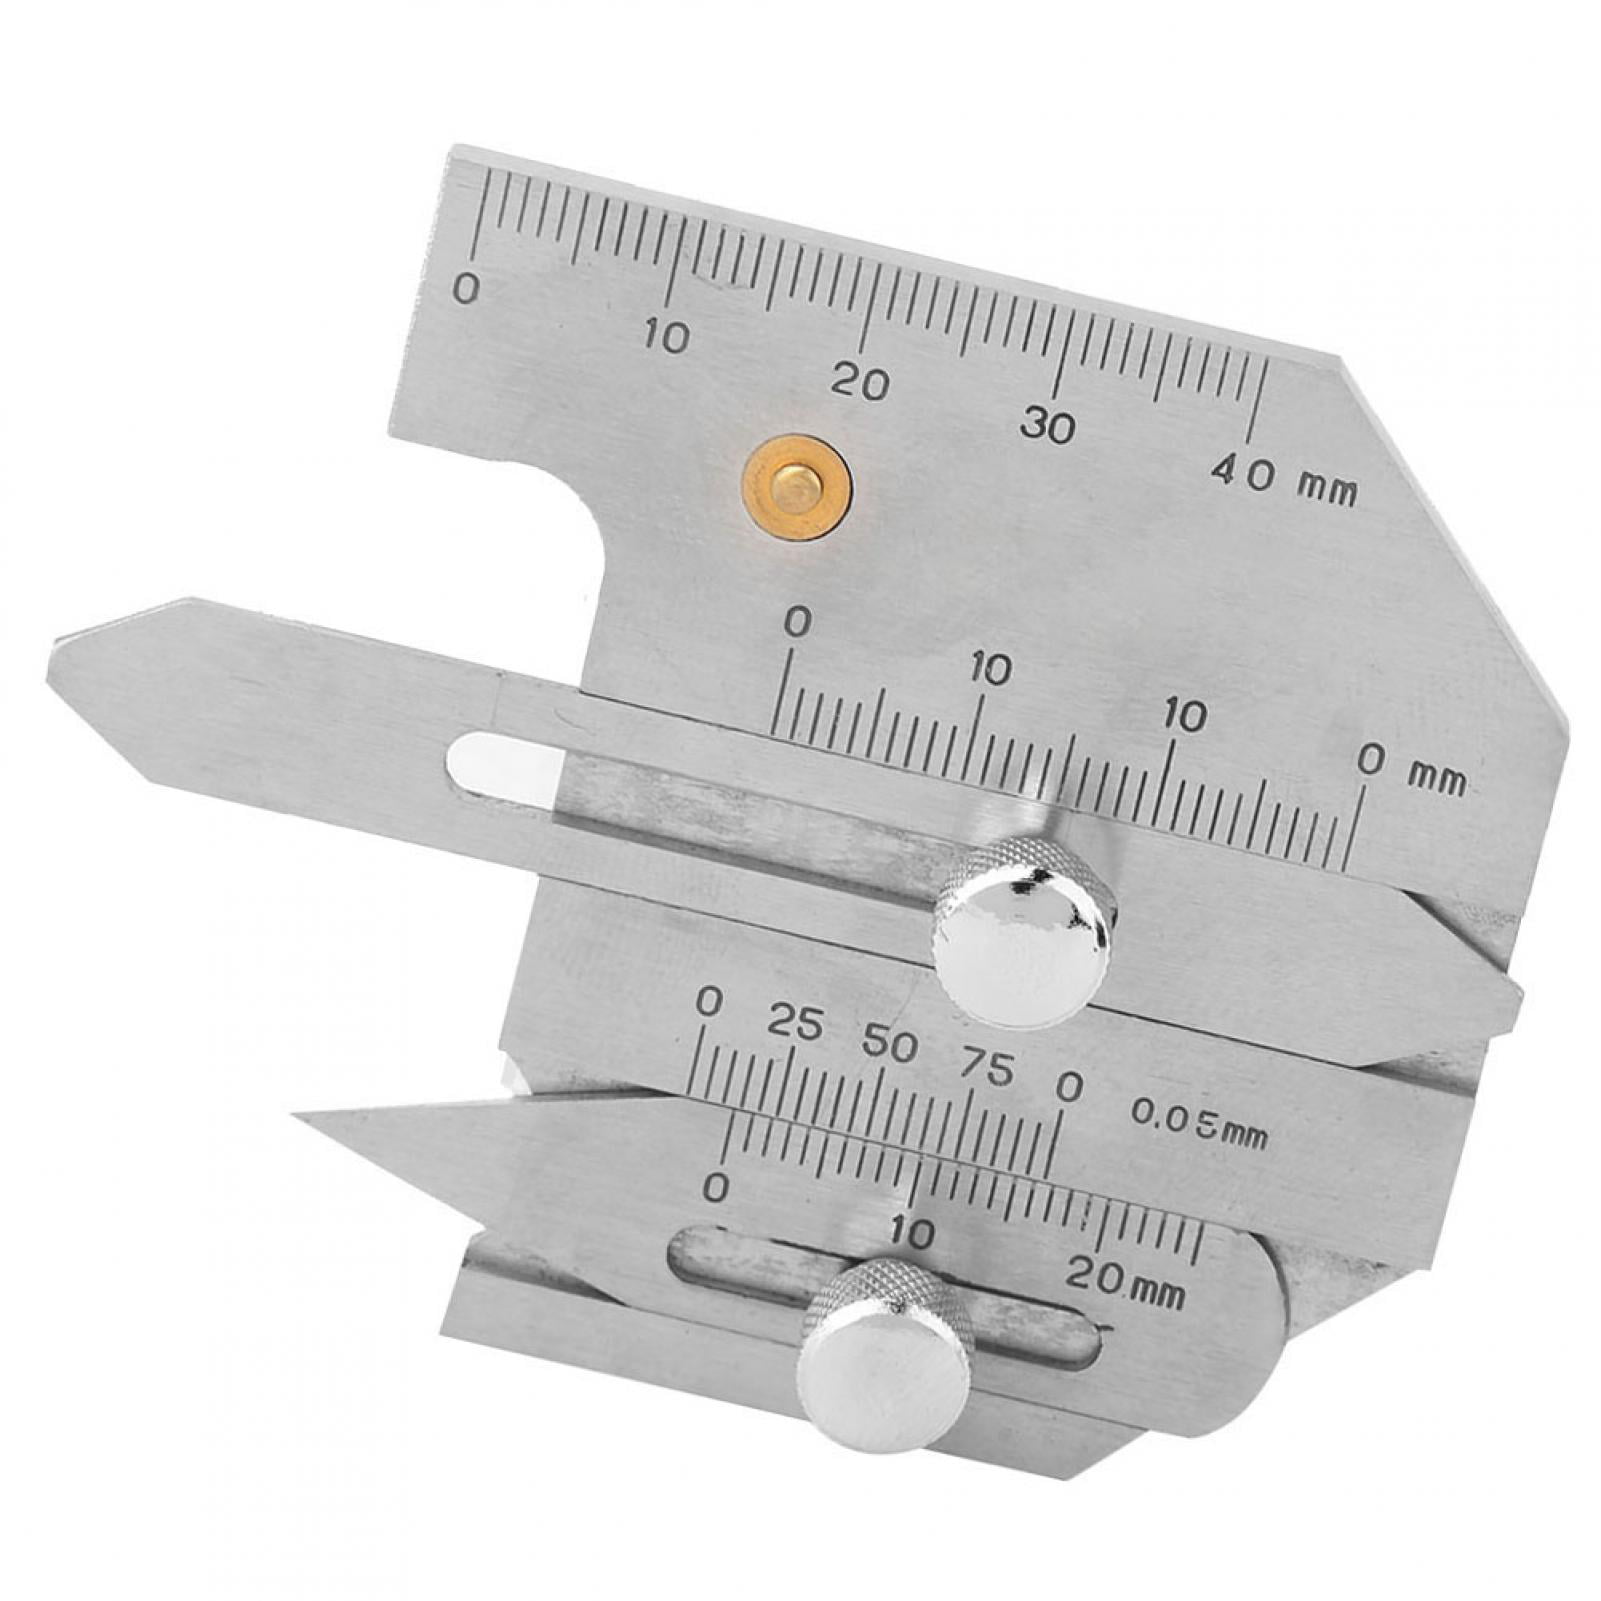 Practical Welding Seam Gauge Welding Inspection Ruler for DIY Tools Hand Tools 